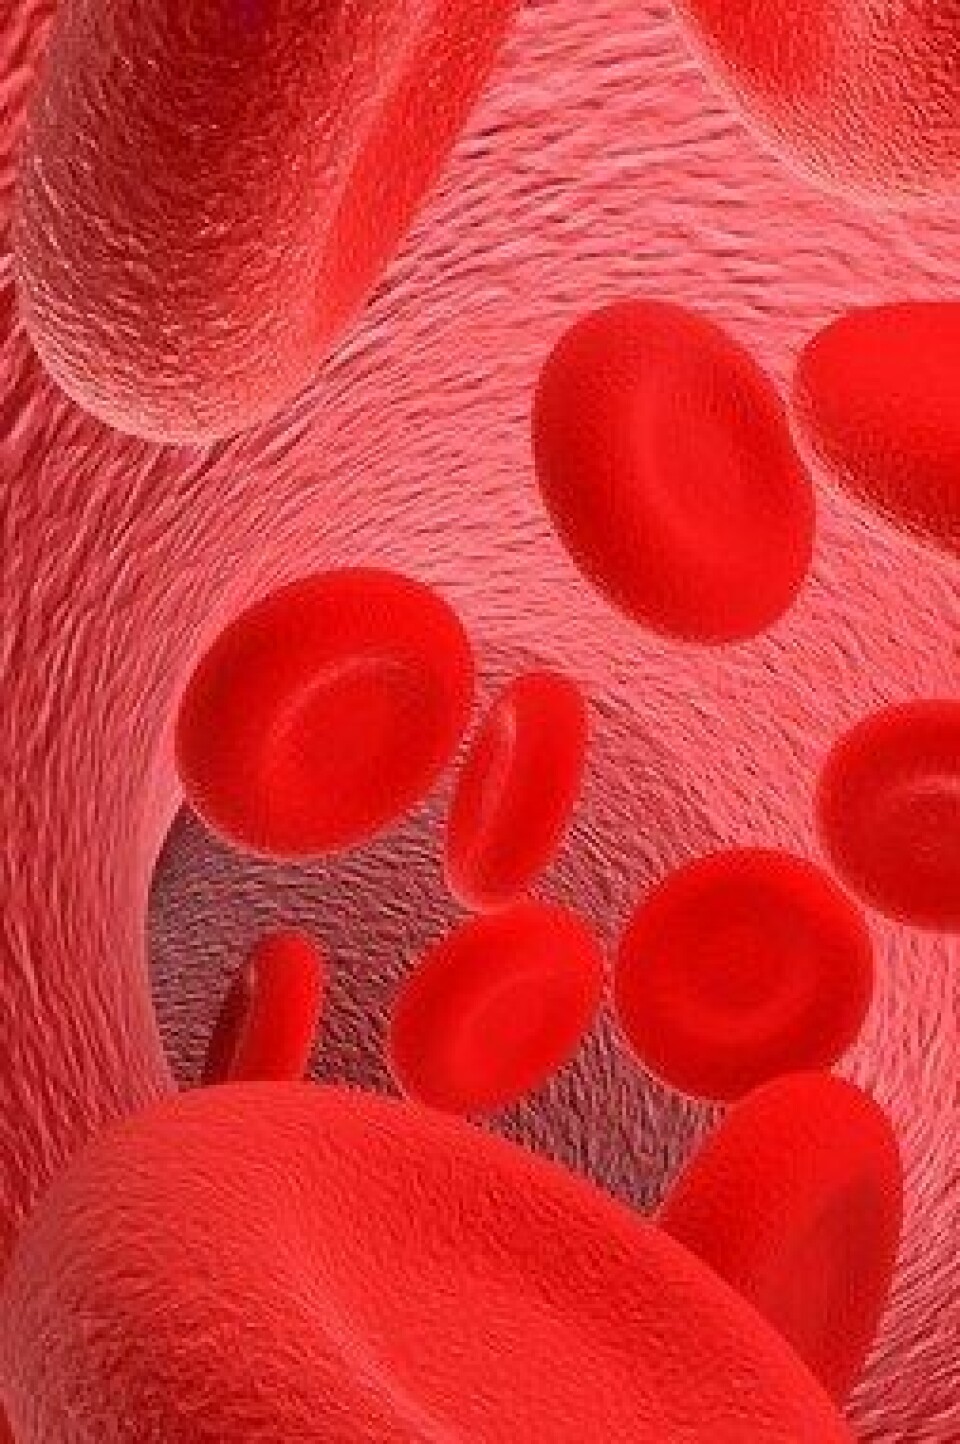 Nanopartikkelen påvirke blodårene slik at de blir dårligere til å utvide seg. (Foto: Colourbox)